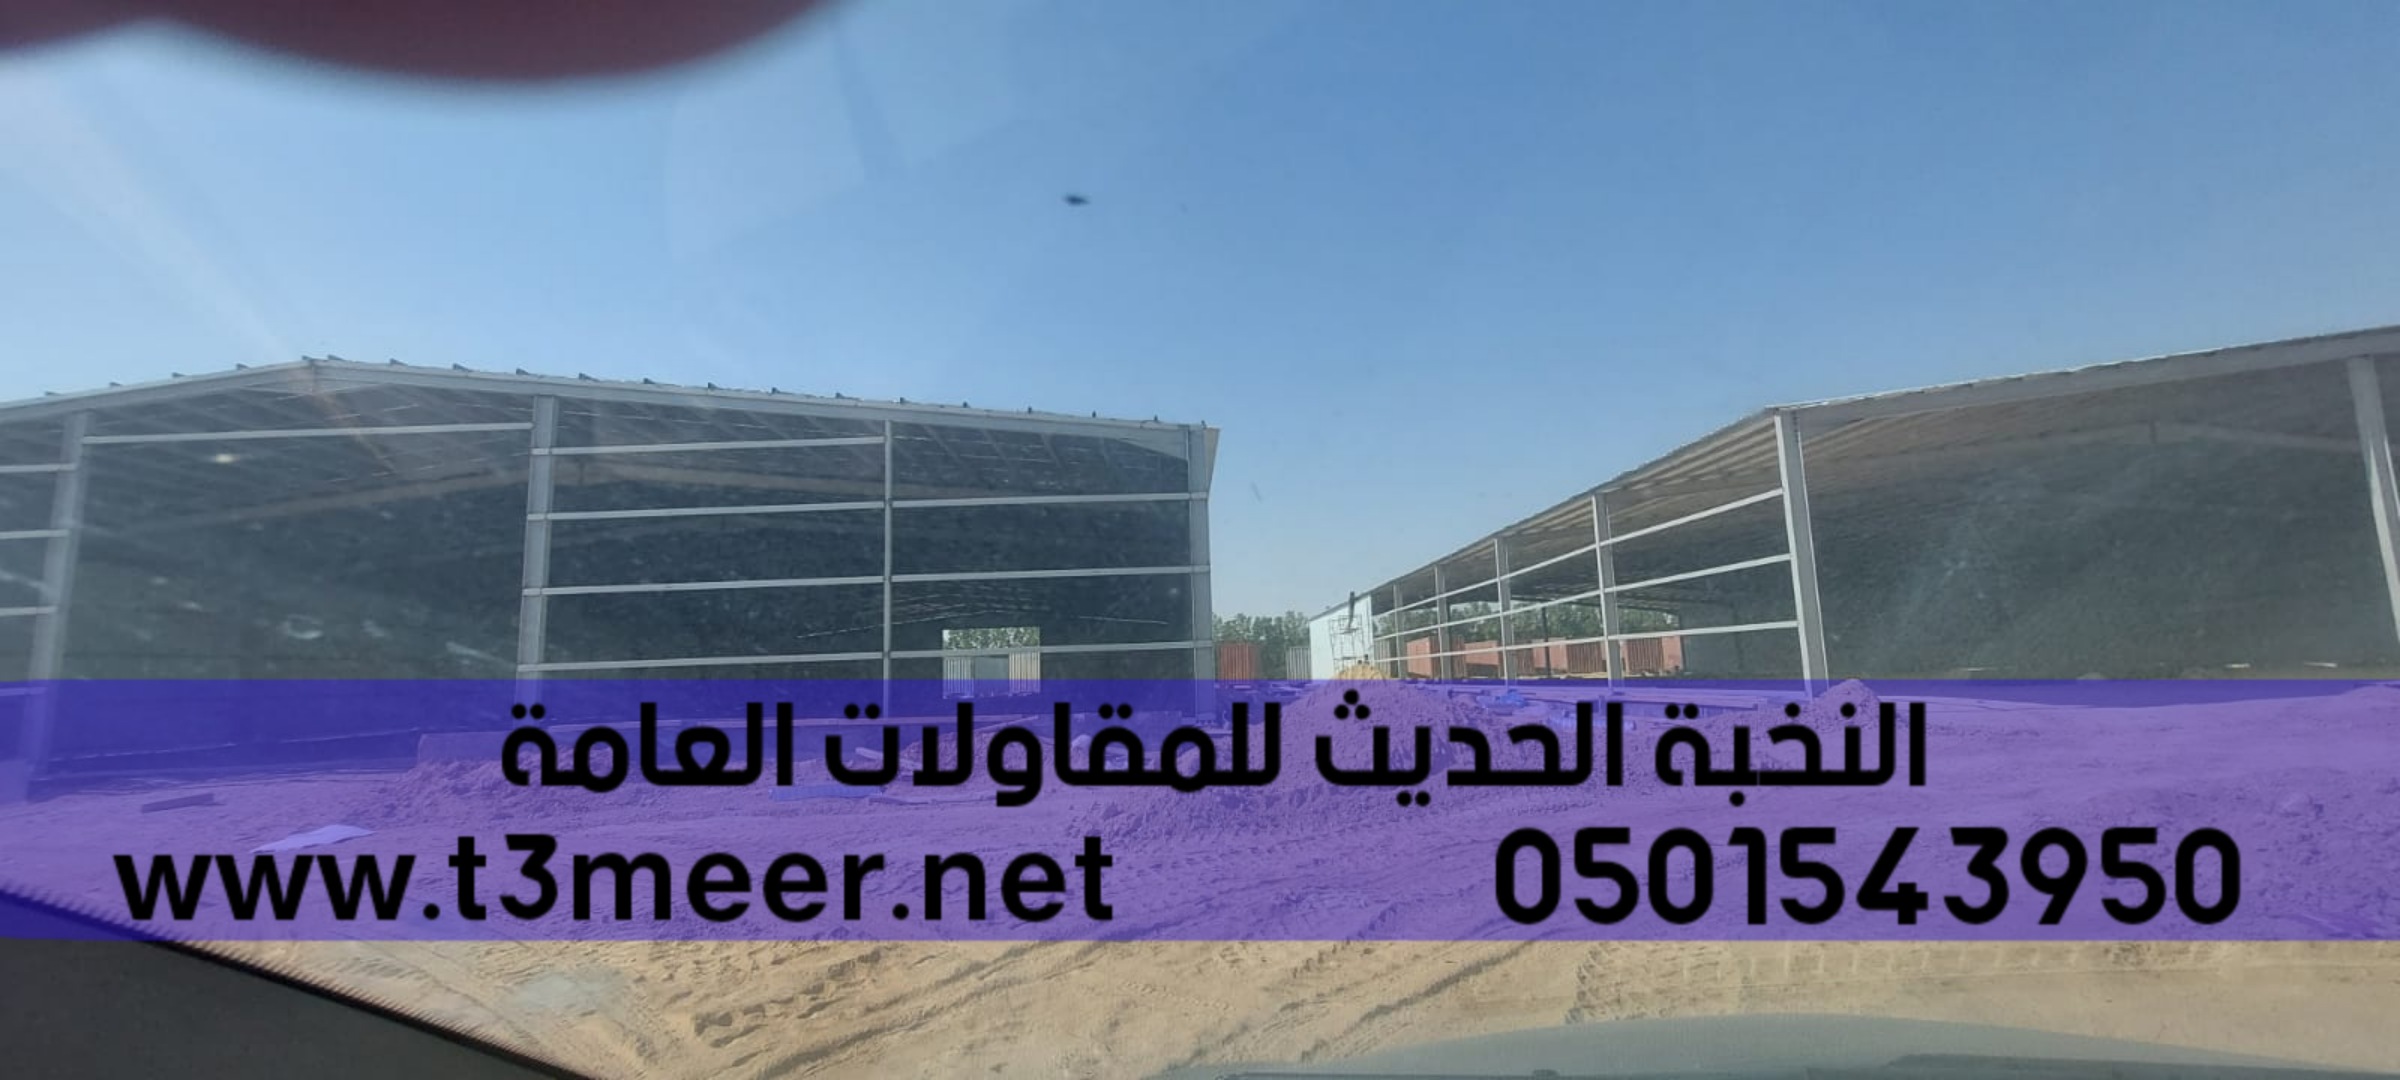 مقاول سندويج بنل في جدة, 0501543950